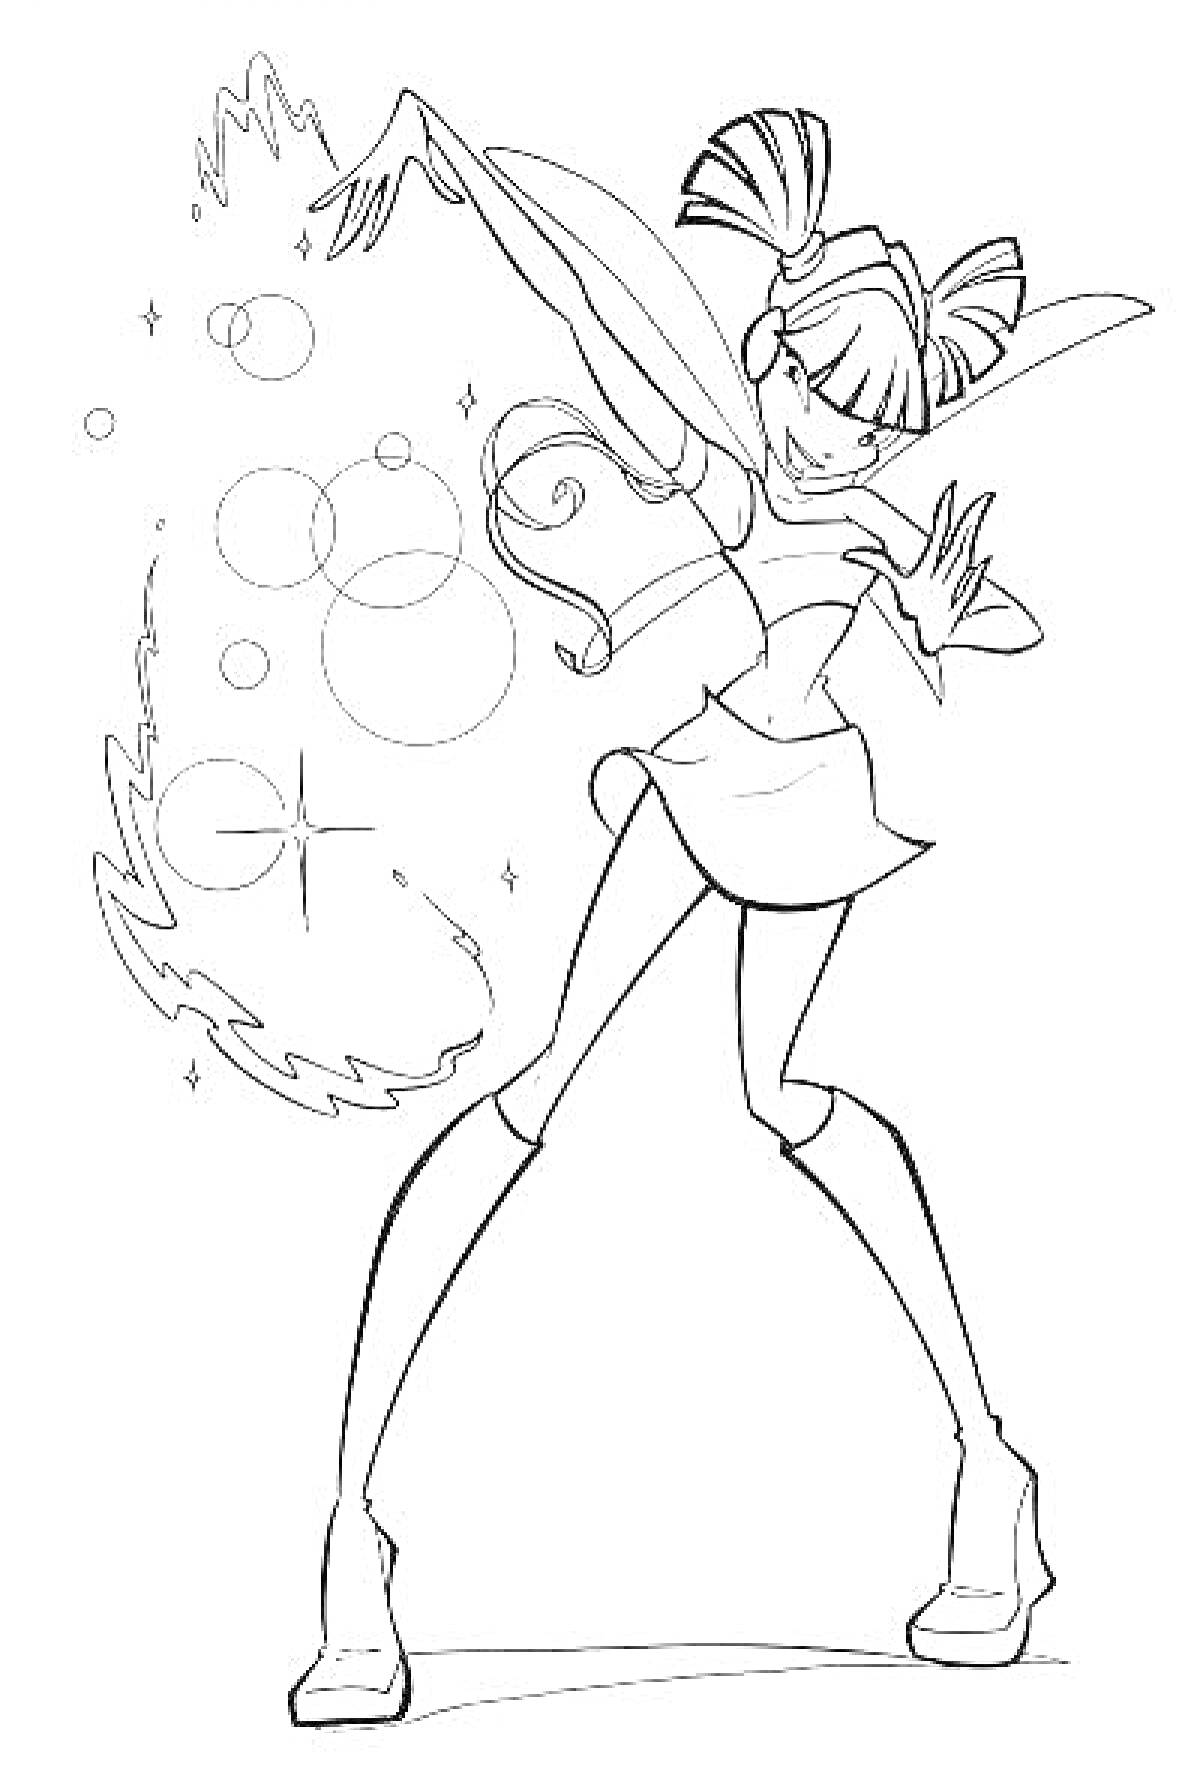 Раскраска Винкс Муза в боевой позе с магическими элементами, пузырями и звёздочками